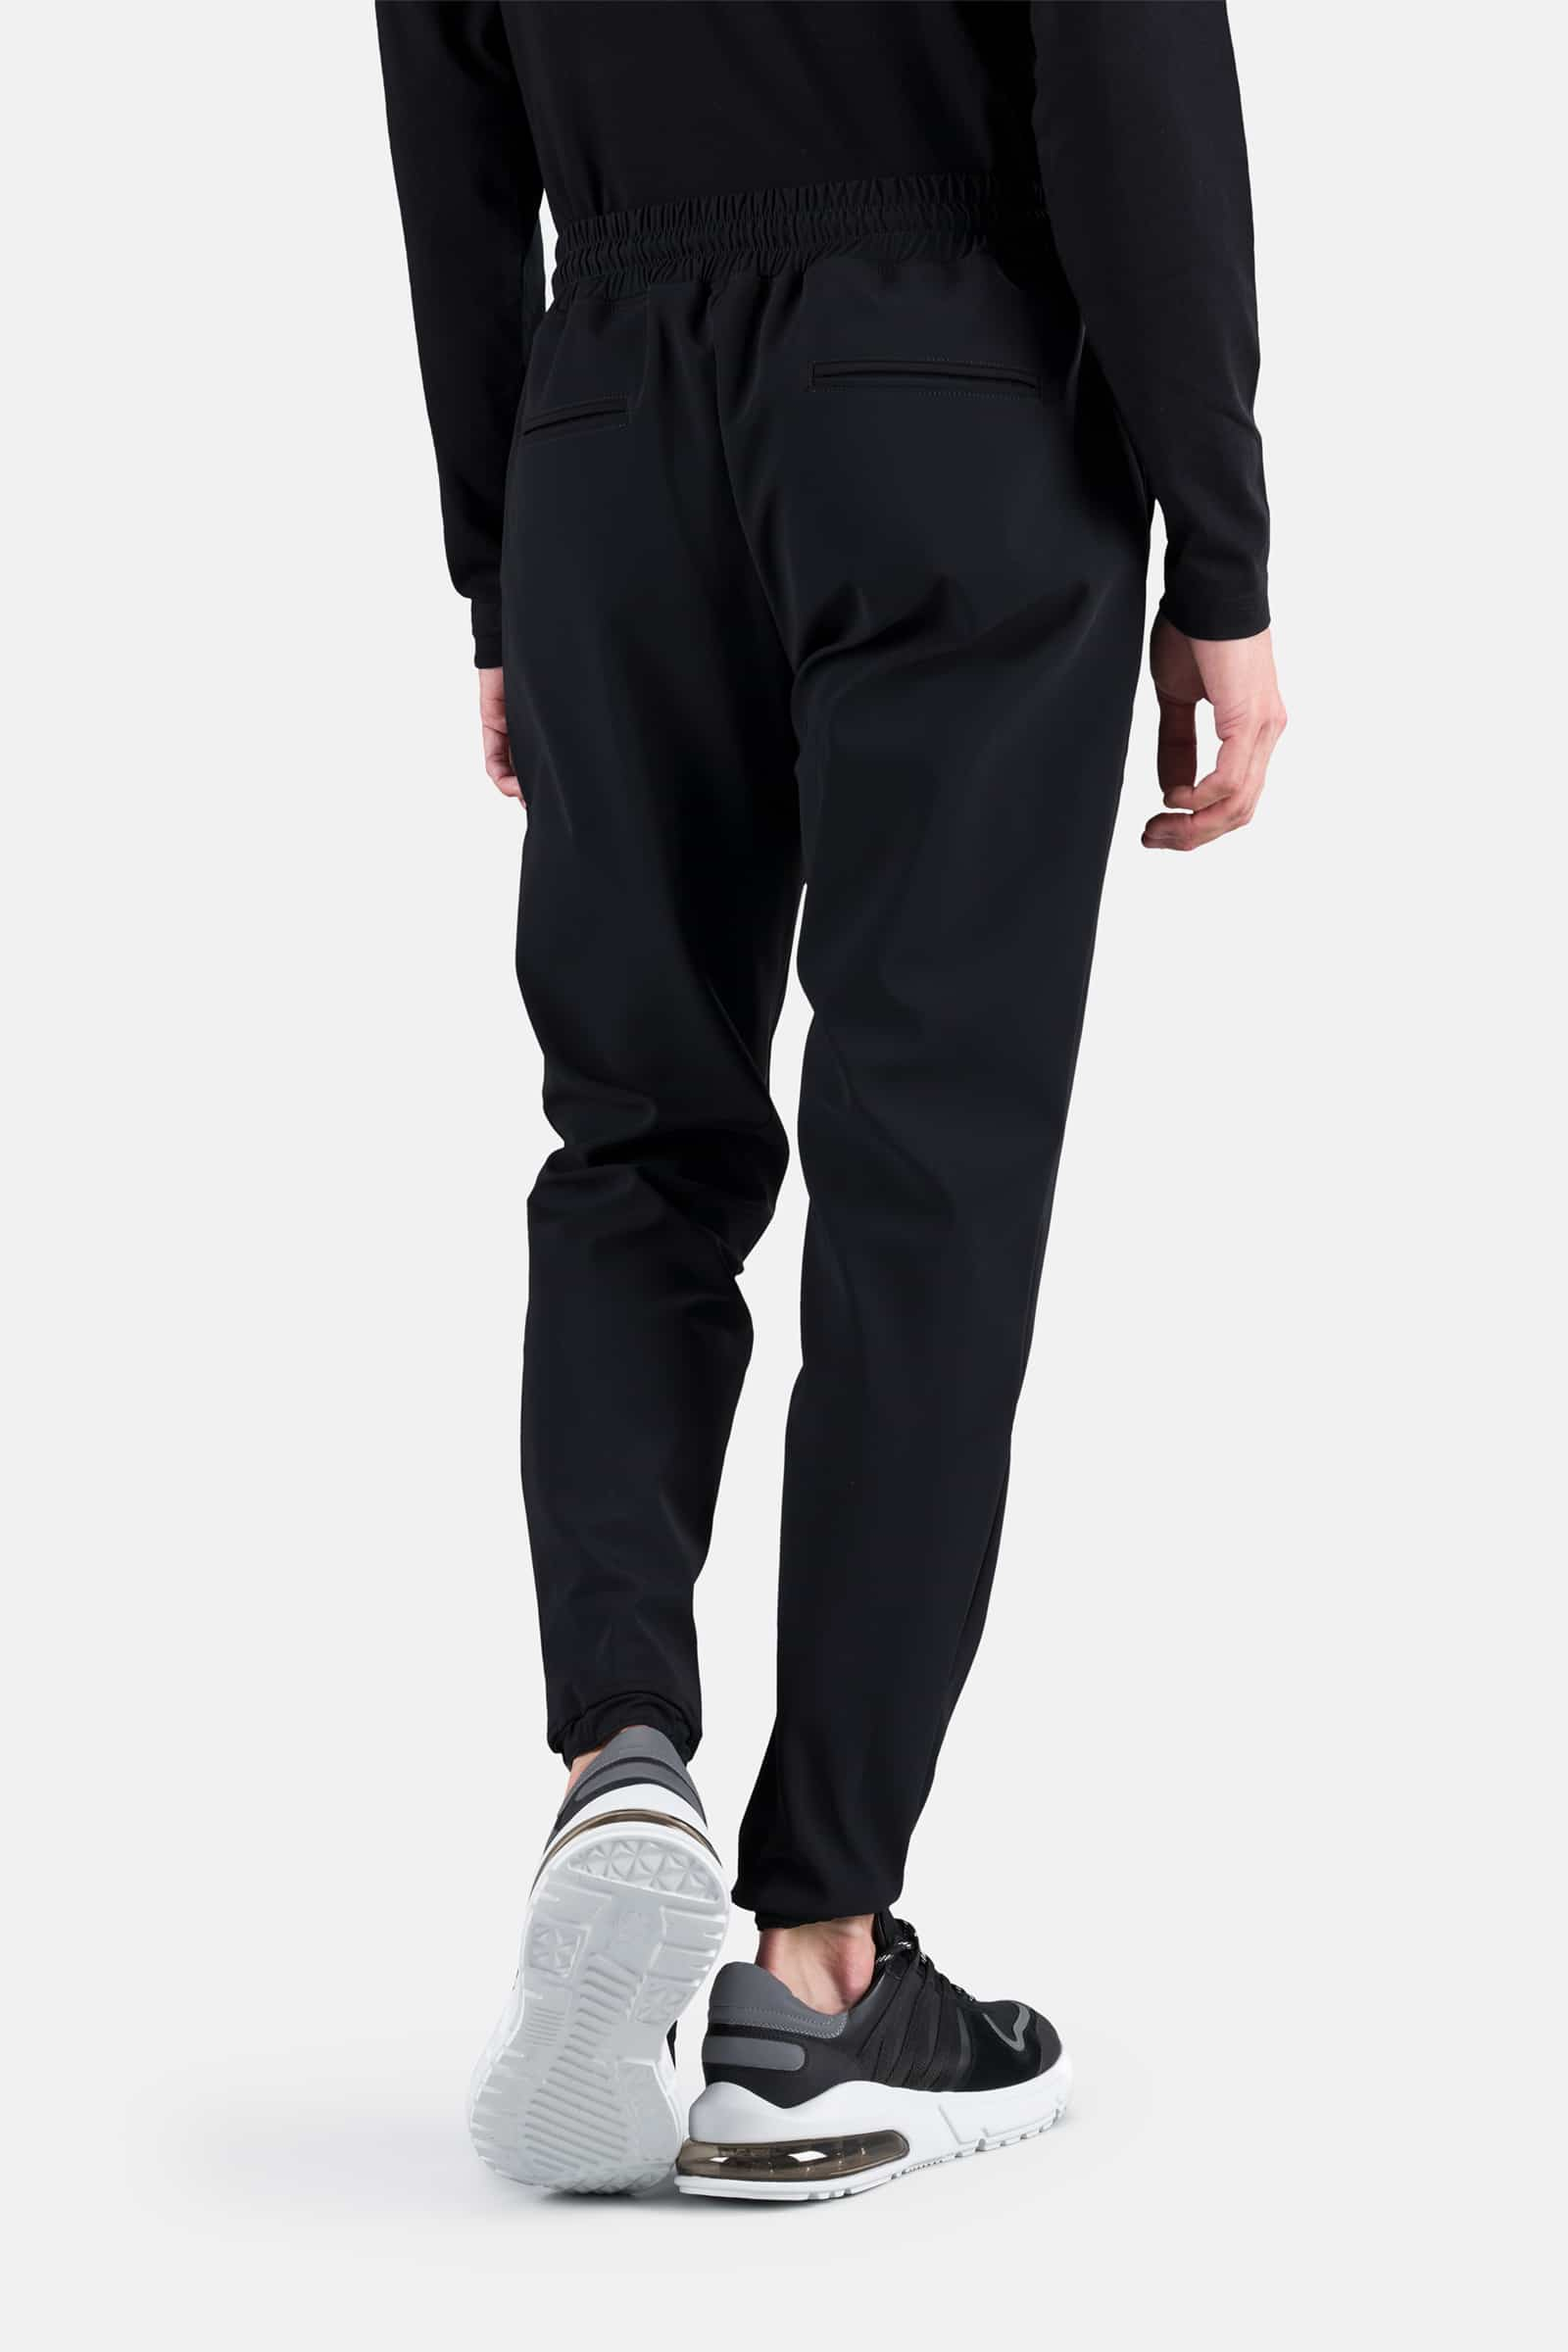 TRACKSUIT PANTS - BLACK - Hydrogen - Luxury Sportwear